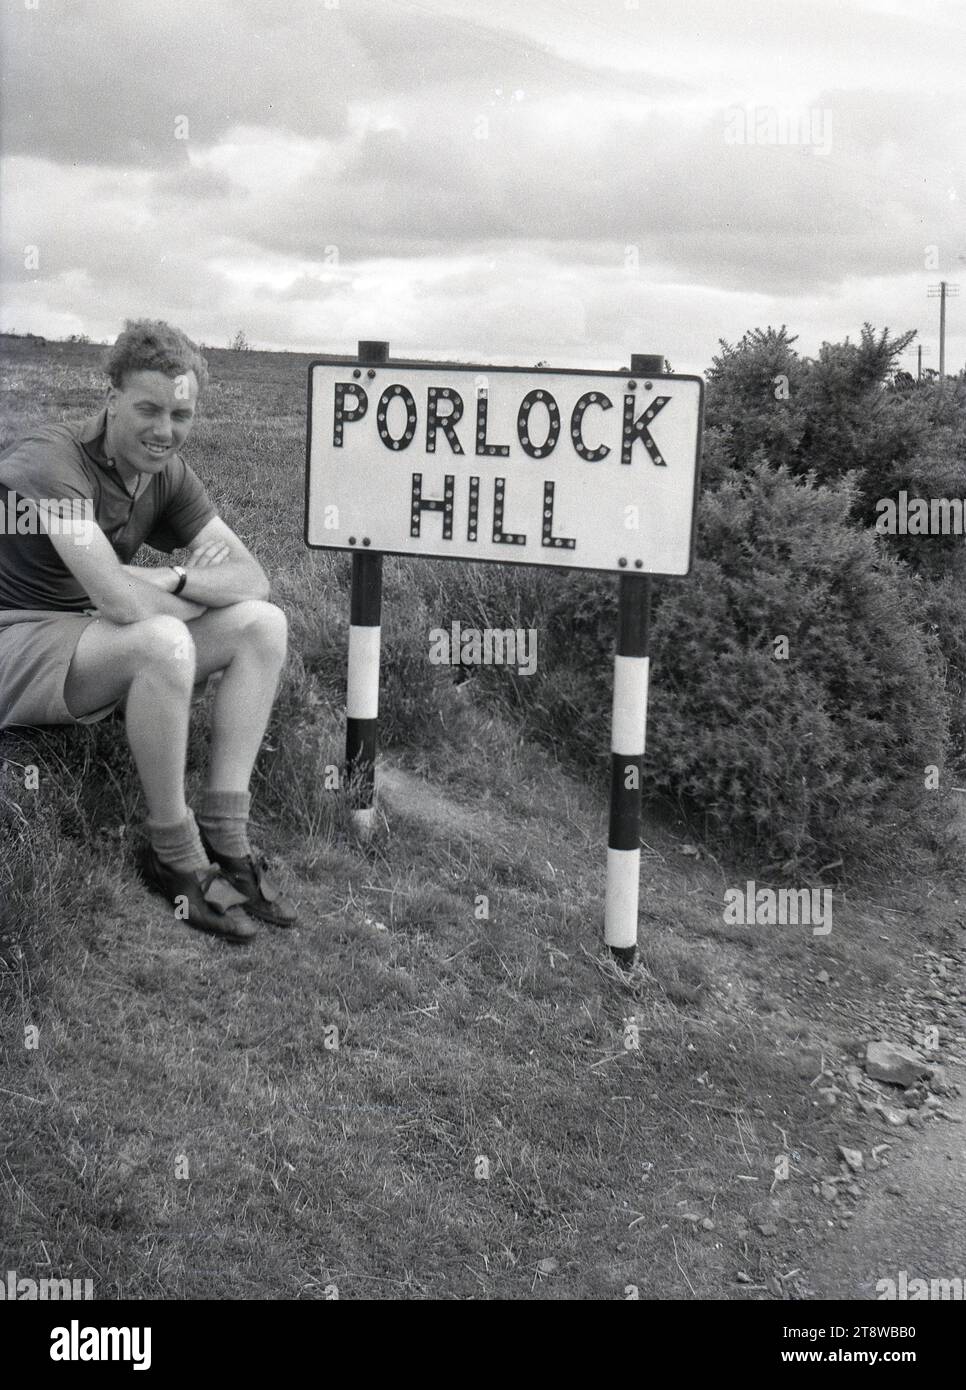 Années 1950, historique, un cycliste de tourisme masculin assis pour sa photo ayant atteint le sommet de la célèbre Porlock Hill dans le Somerset, Angleterre, Royaume-Uni. Faisant partie de l'A39, la route est considérée comme la route A la plus raide de Grande-Bretagne, avec 1-4 par endroits. Banque D'Images